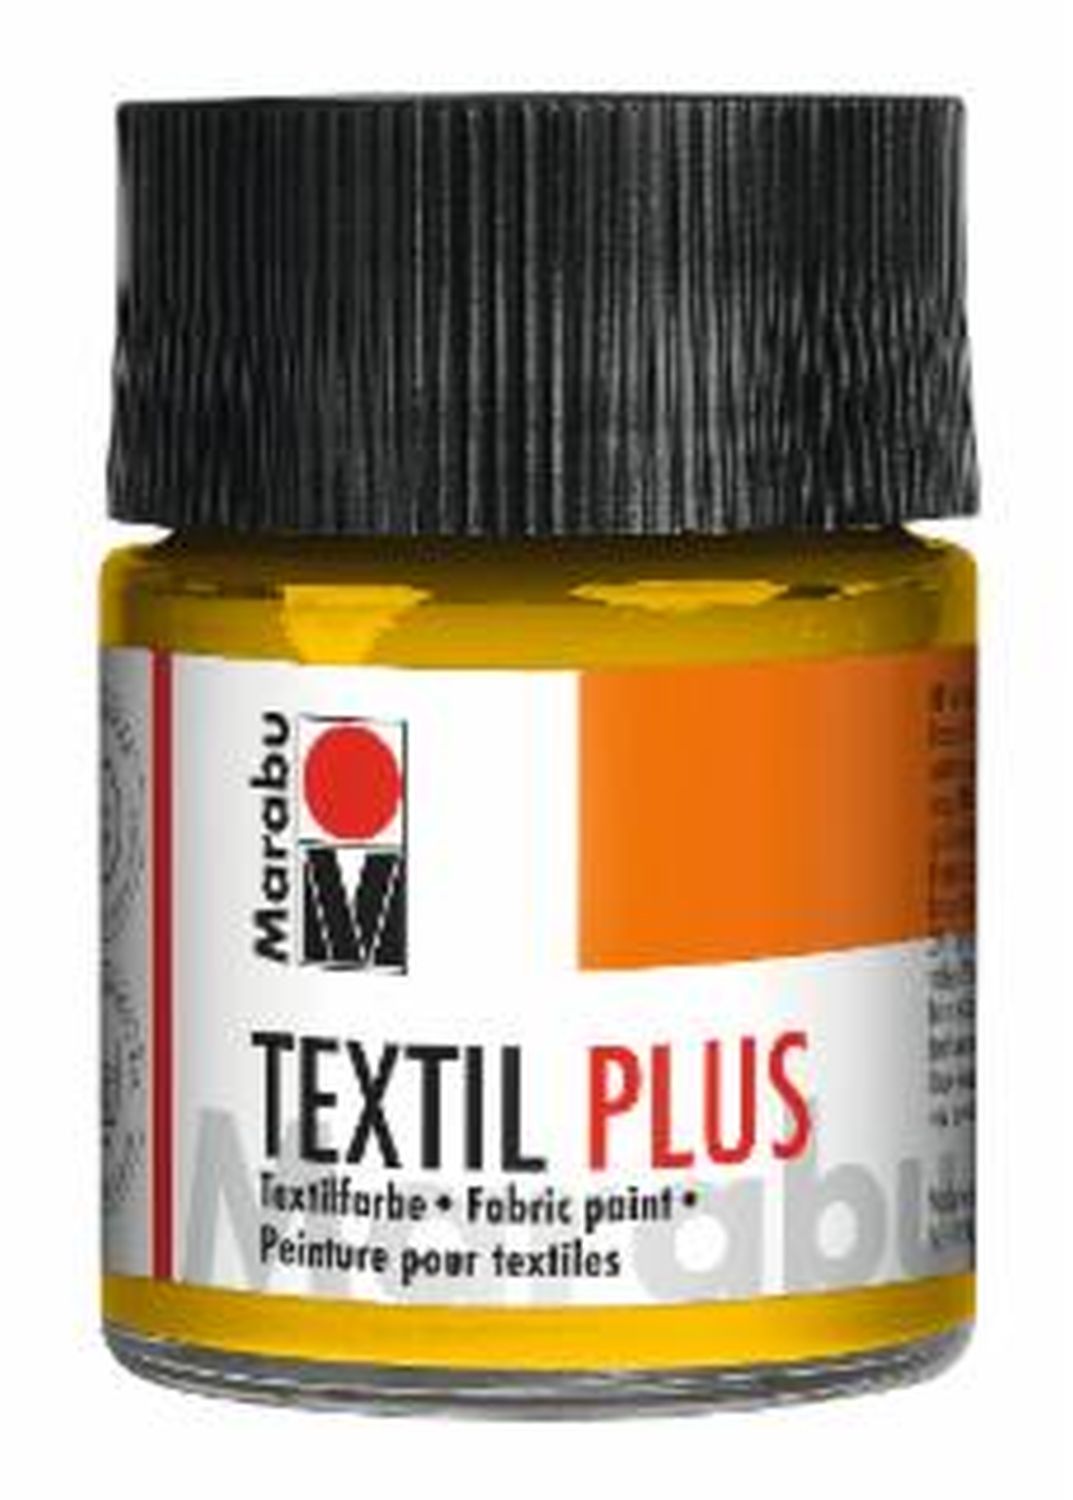 Textil plus - Mittelgelb 021, 50 ml